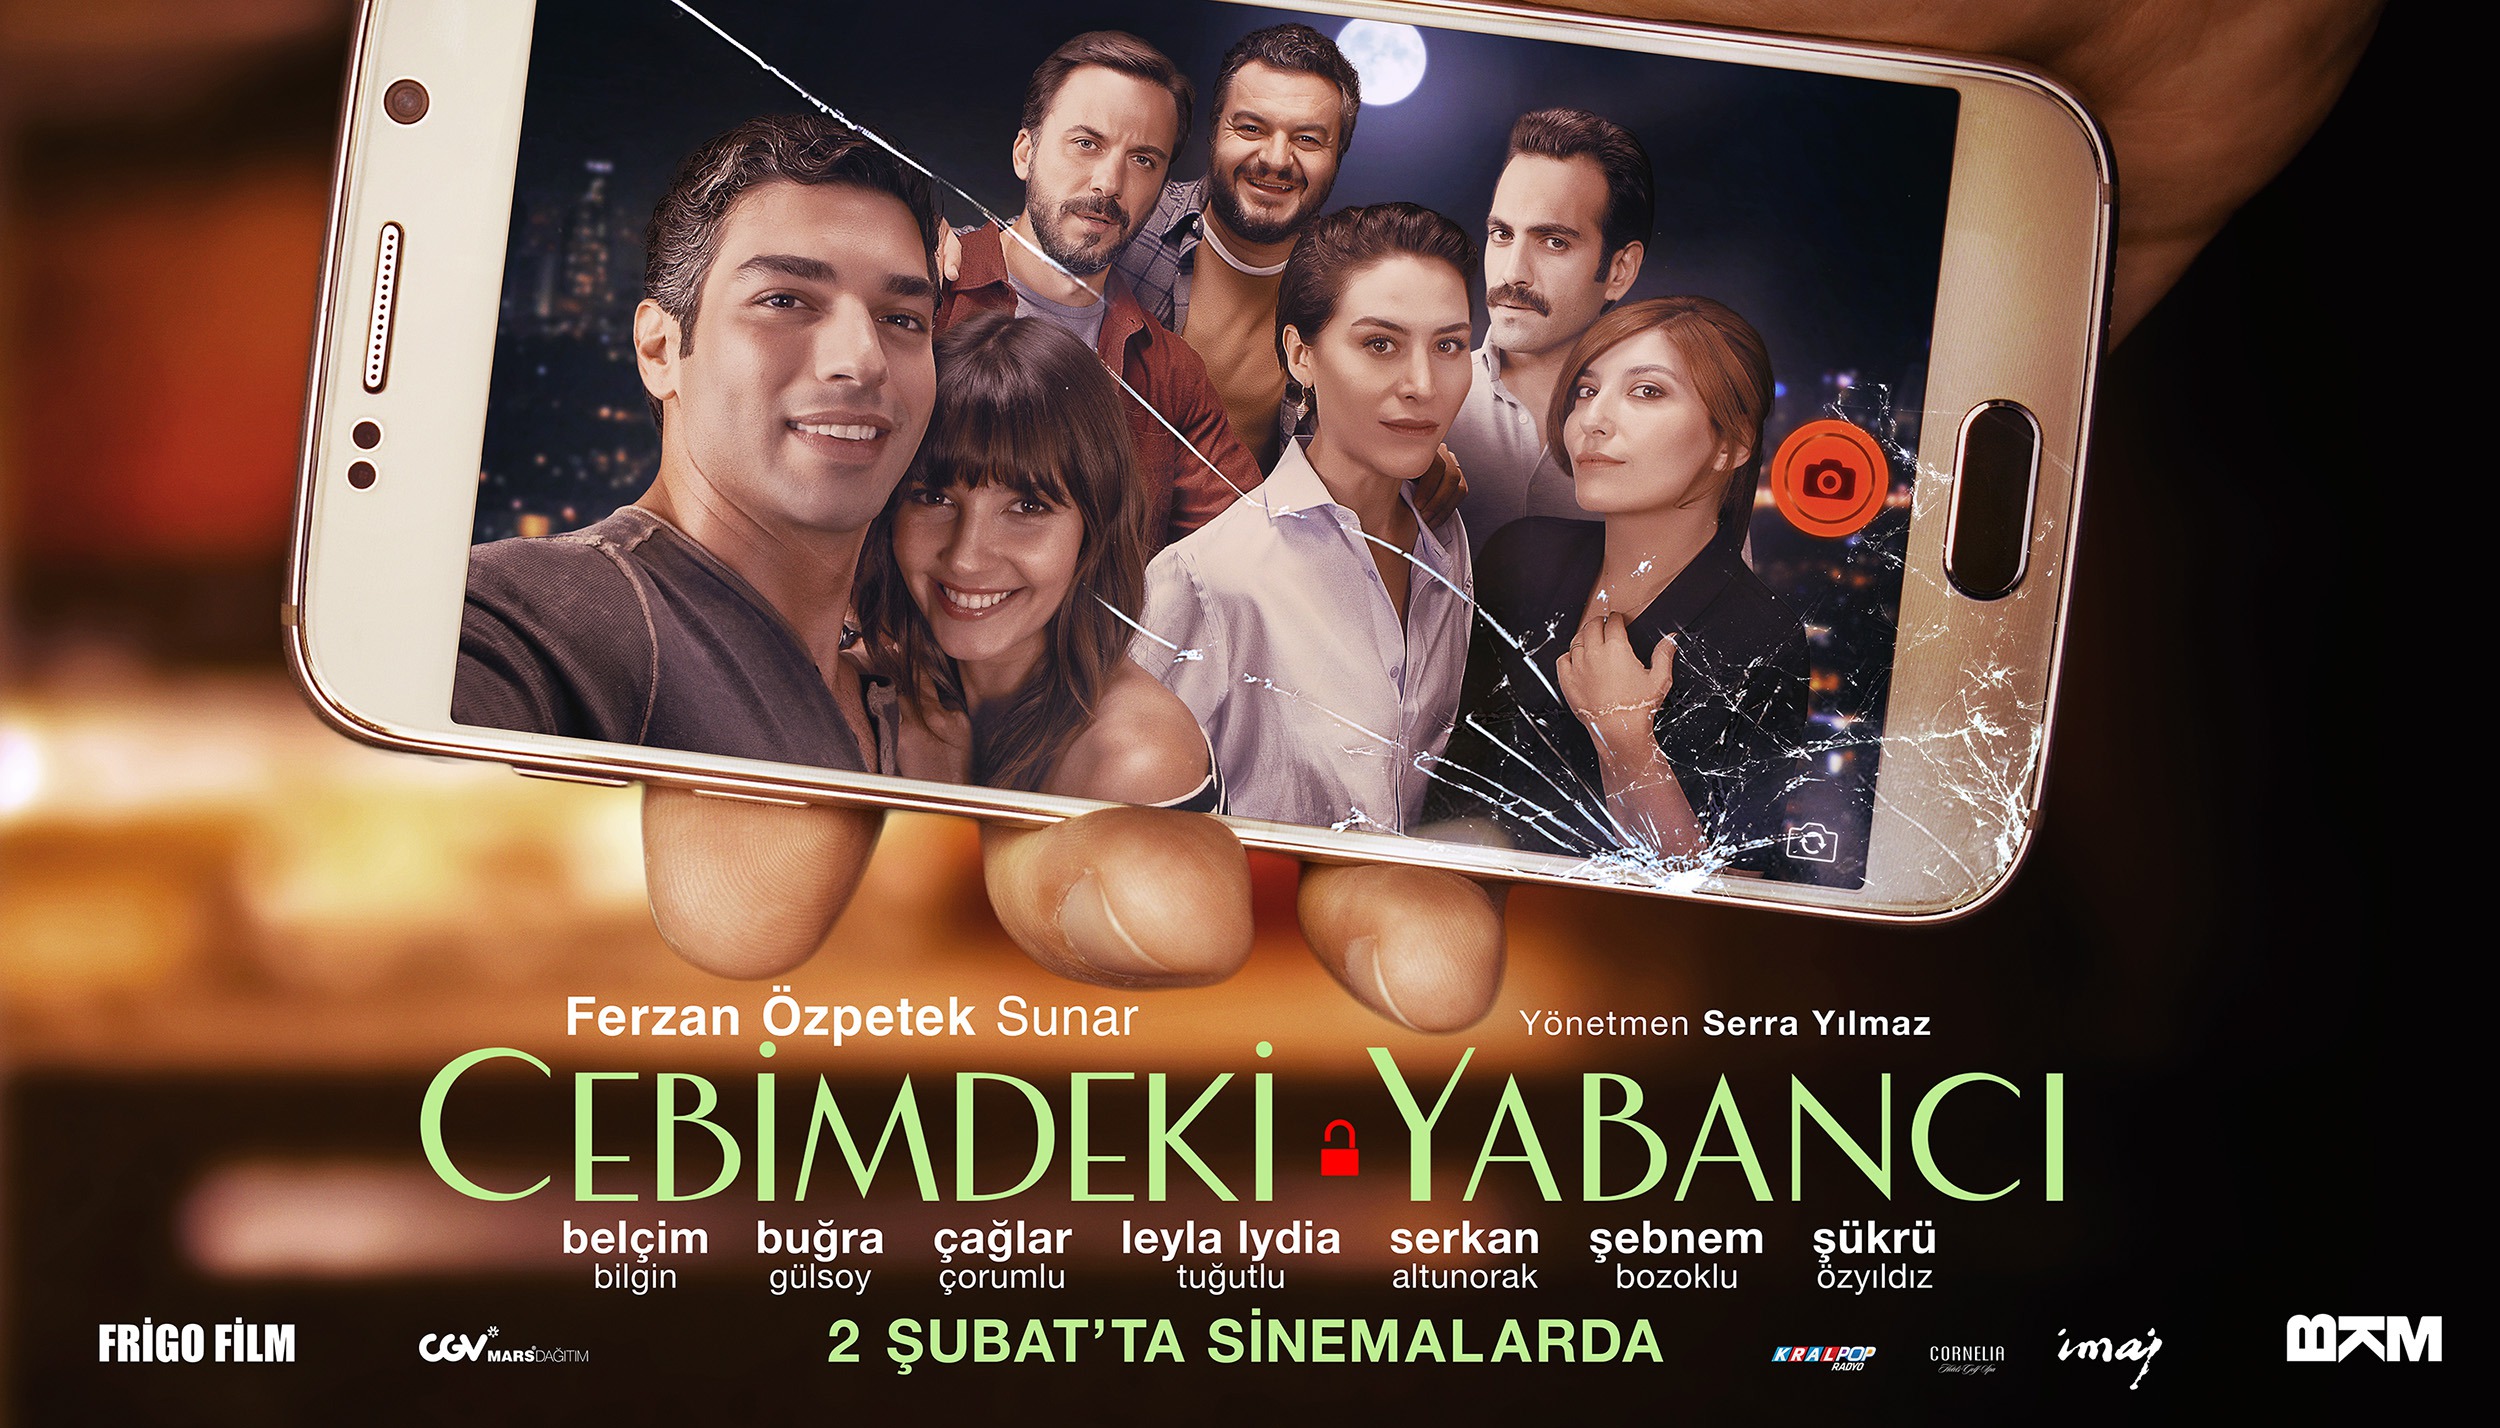 Mega Sized Movie Poster Image for Cebimdeki Yabancı (#3 of 10)